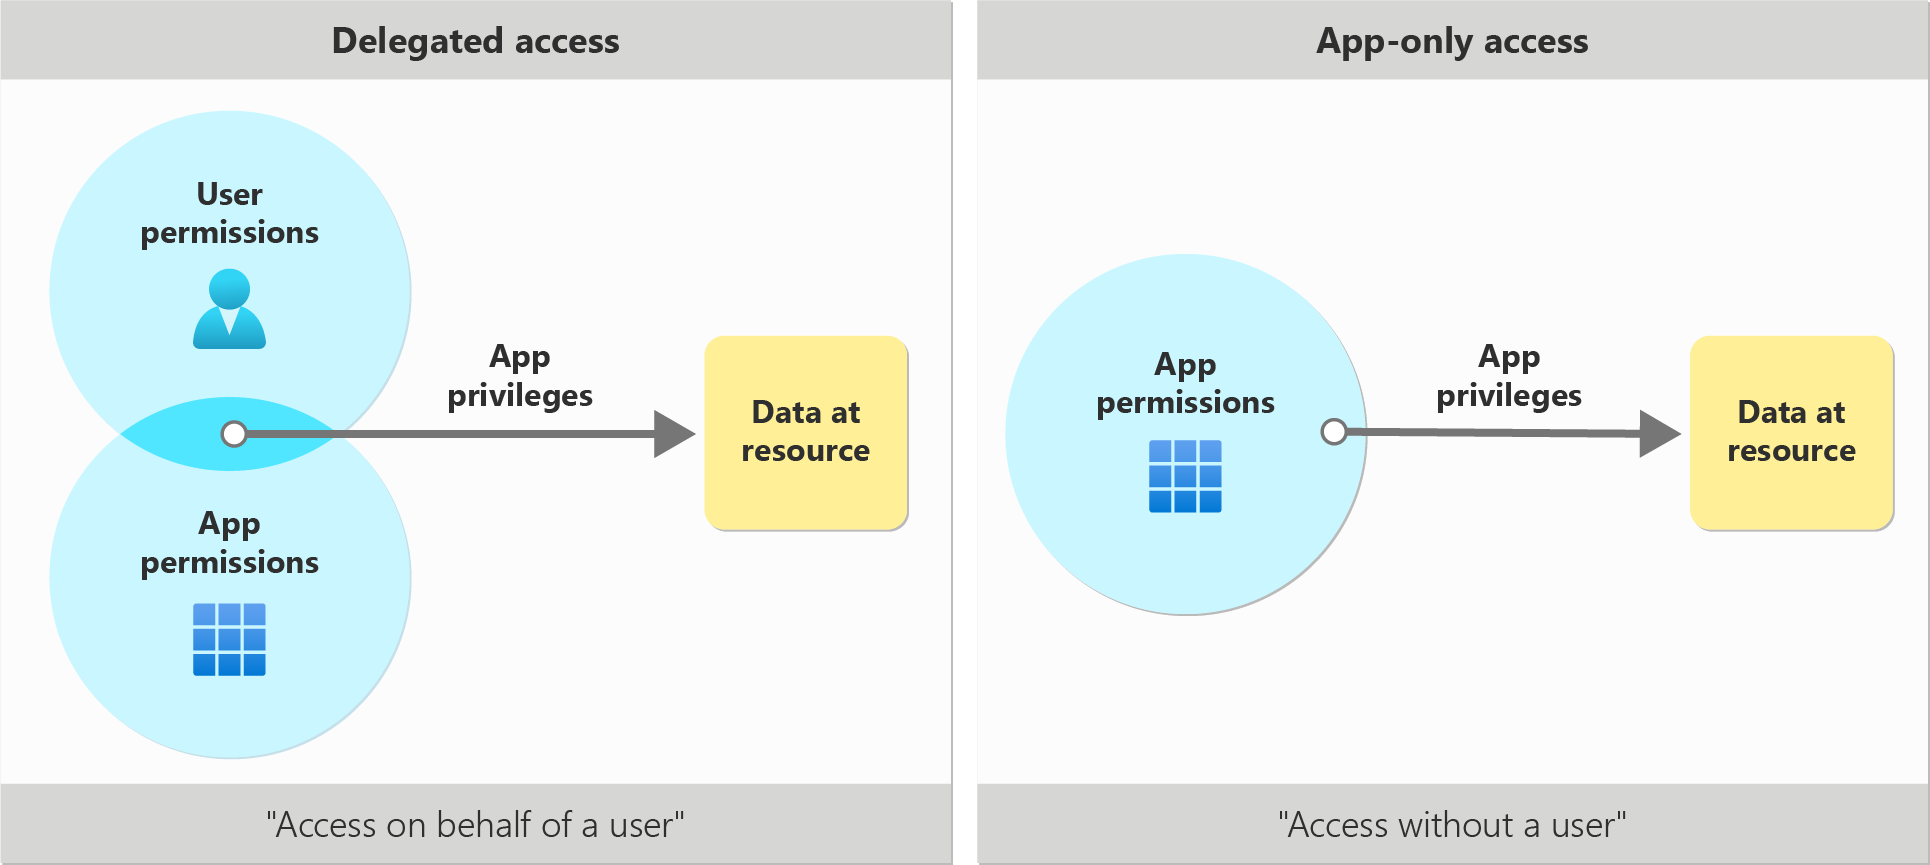 Ilustração de privilégios de aplicativo em cenários de acesso delegados versus somente aplicativos.